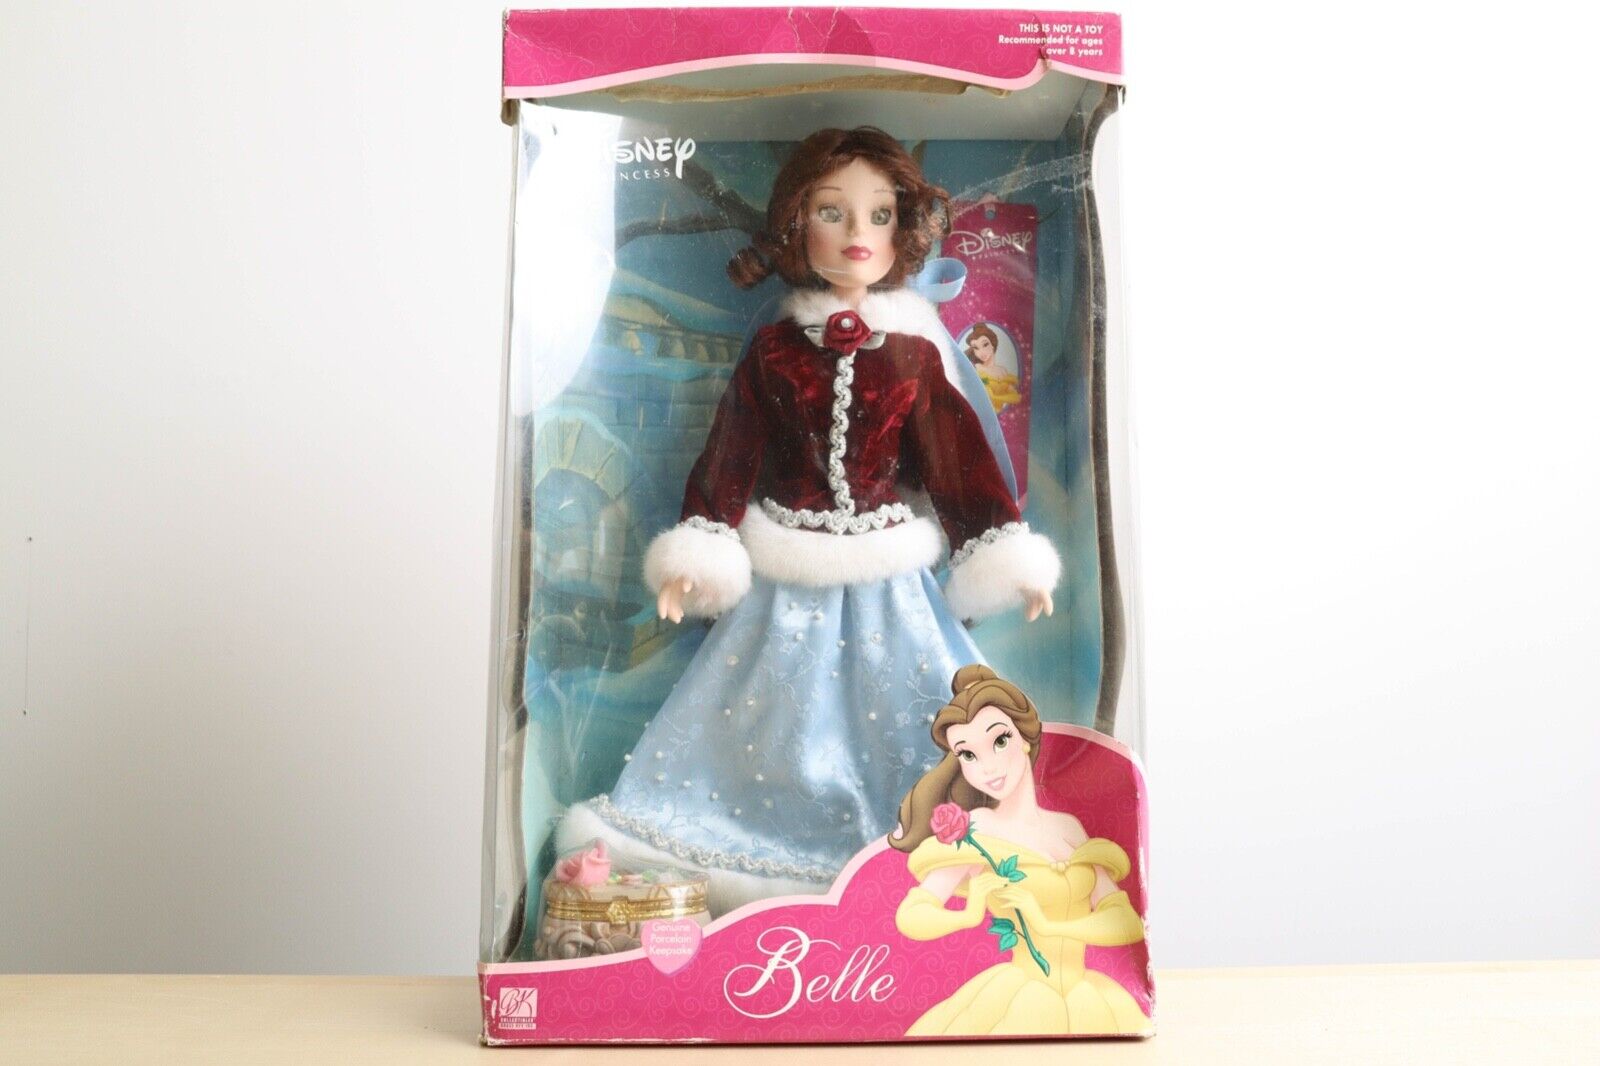 Disney Belle Porcelain Keepsake 15” Tall Brass Key Doll - 2001 READ DESCRIPTION